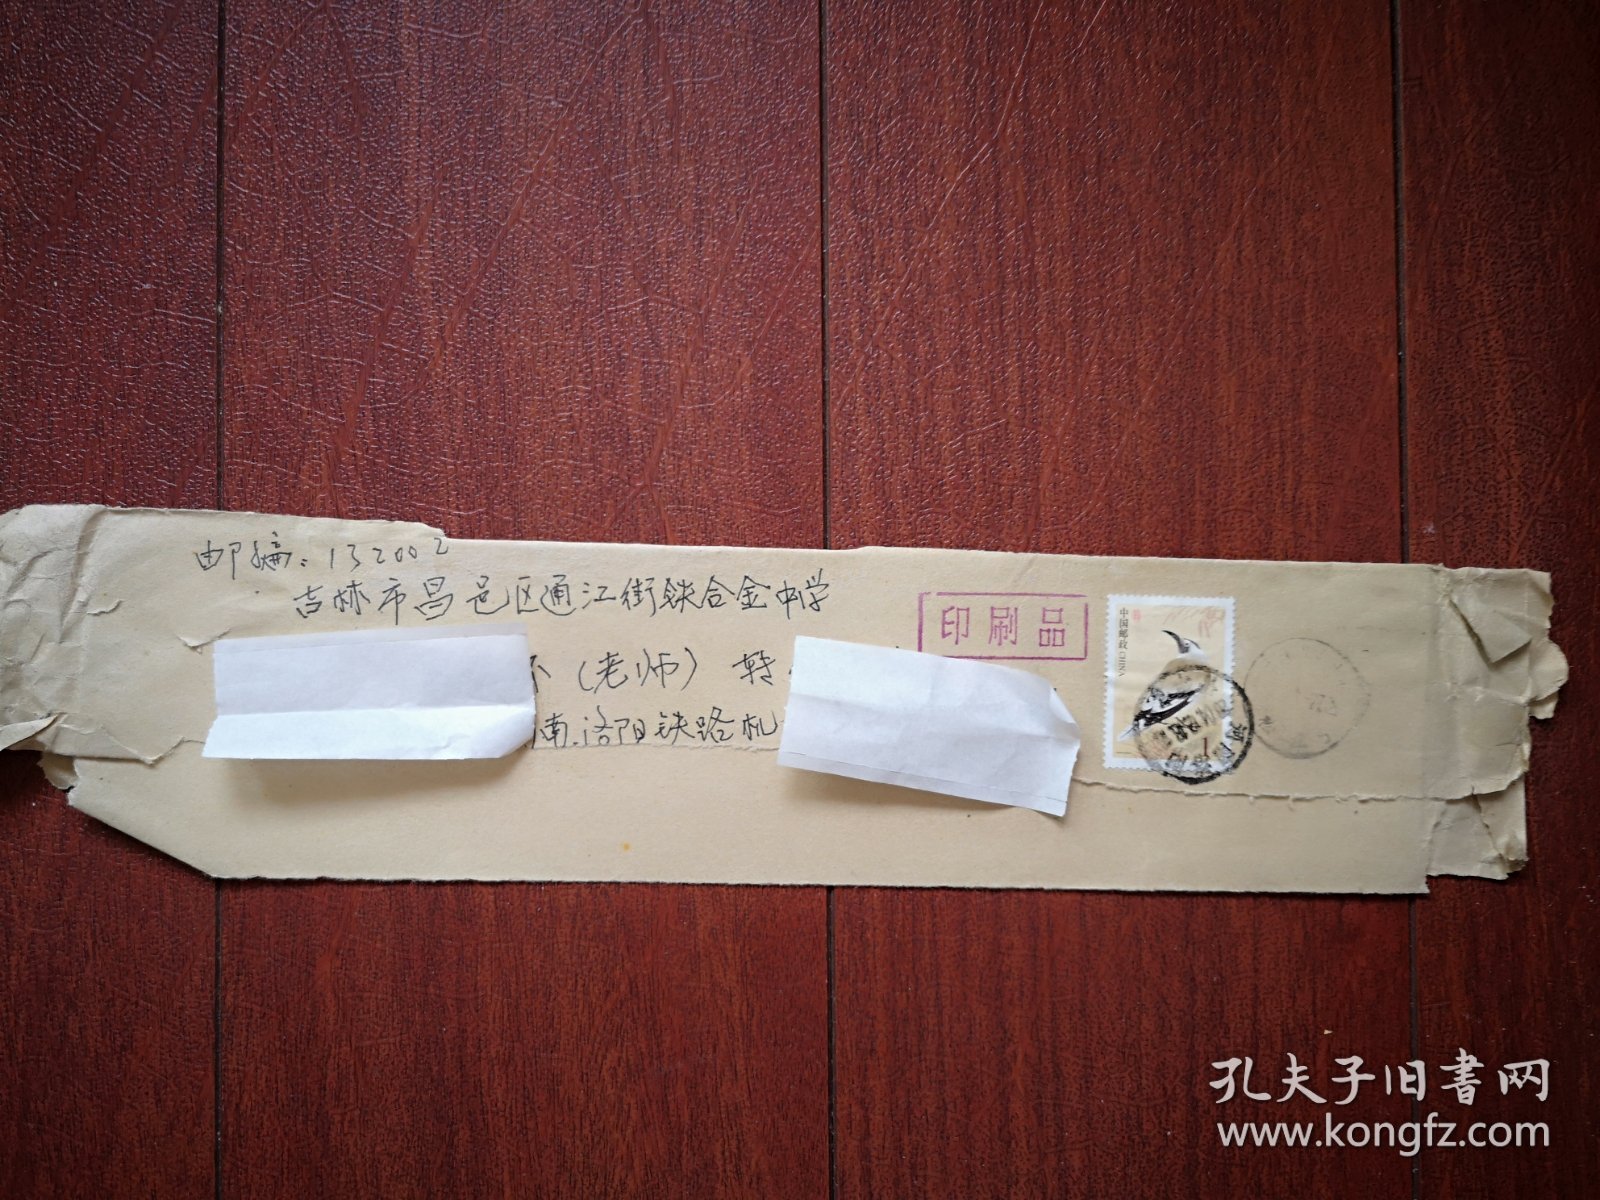 实寄封，贴普31中国鸟1元邮票，洛阳机务段至吉林市通江街铁合金中学，2004年12月18日。